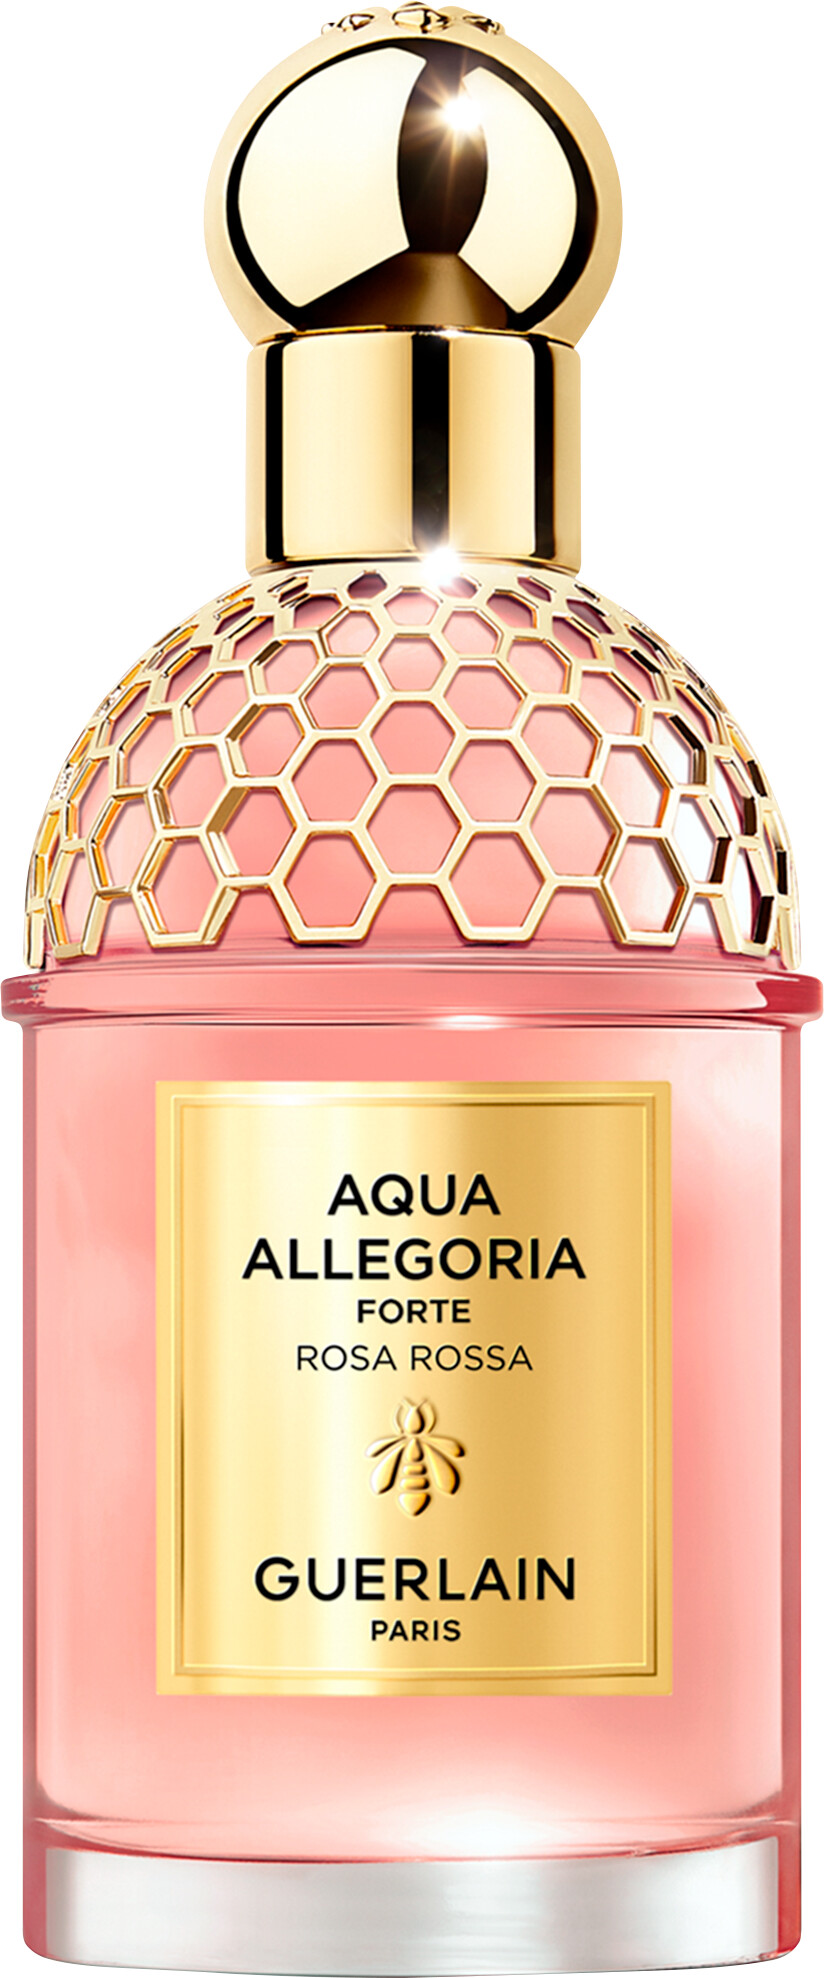 Guerlain Aqua Allegoria Forte Rosa Rossa